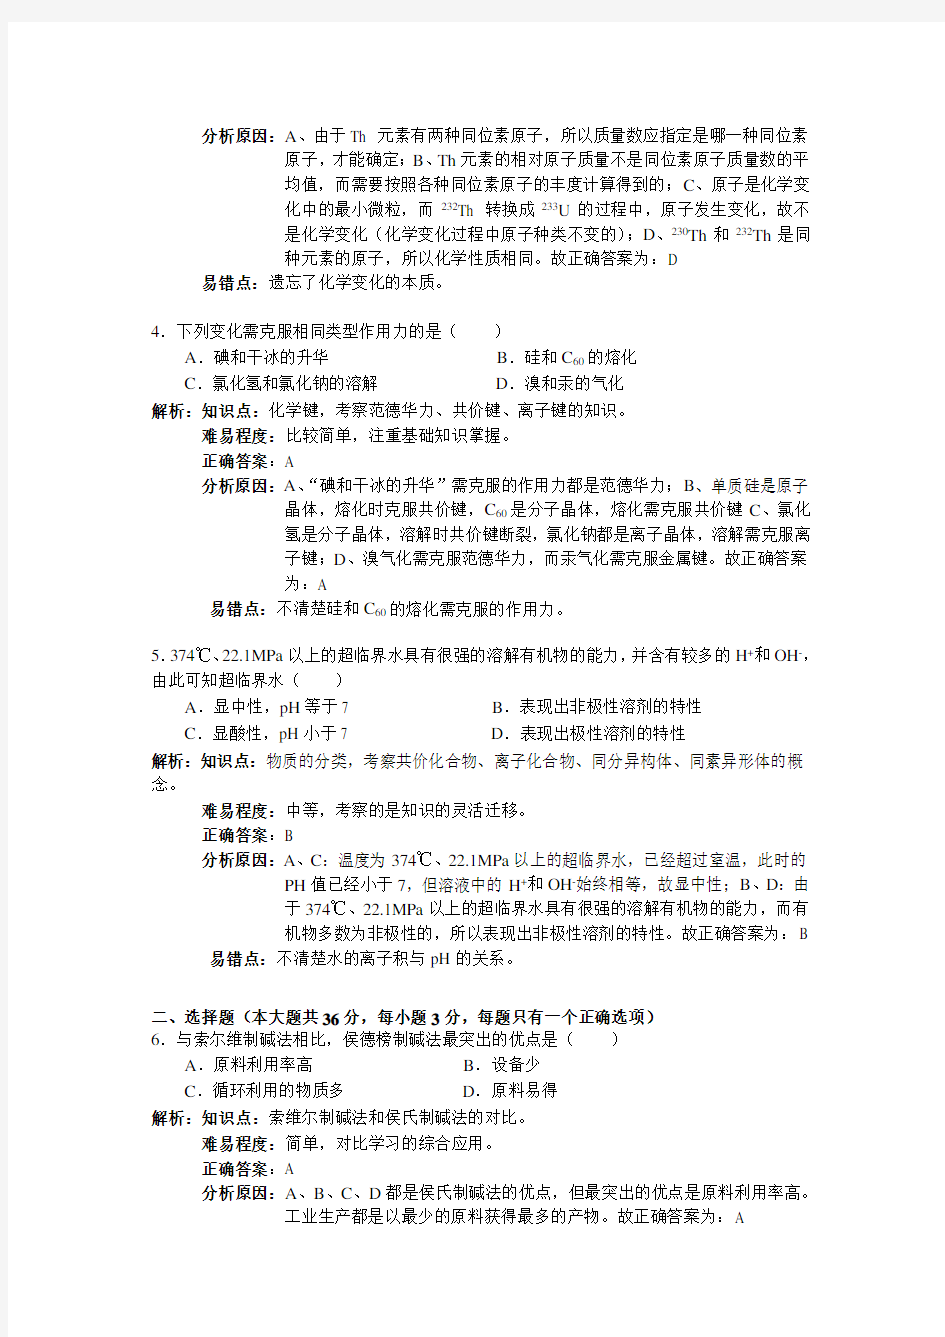 2013年上海高考化学试卷及答案解析版